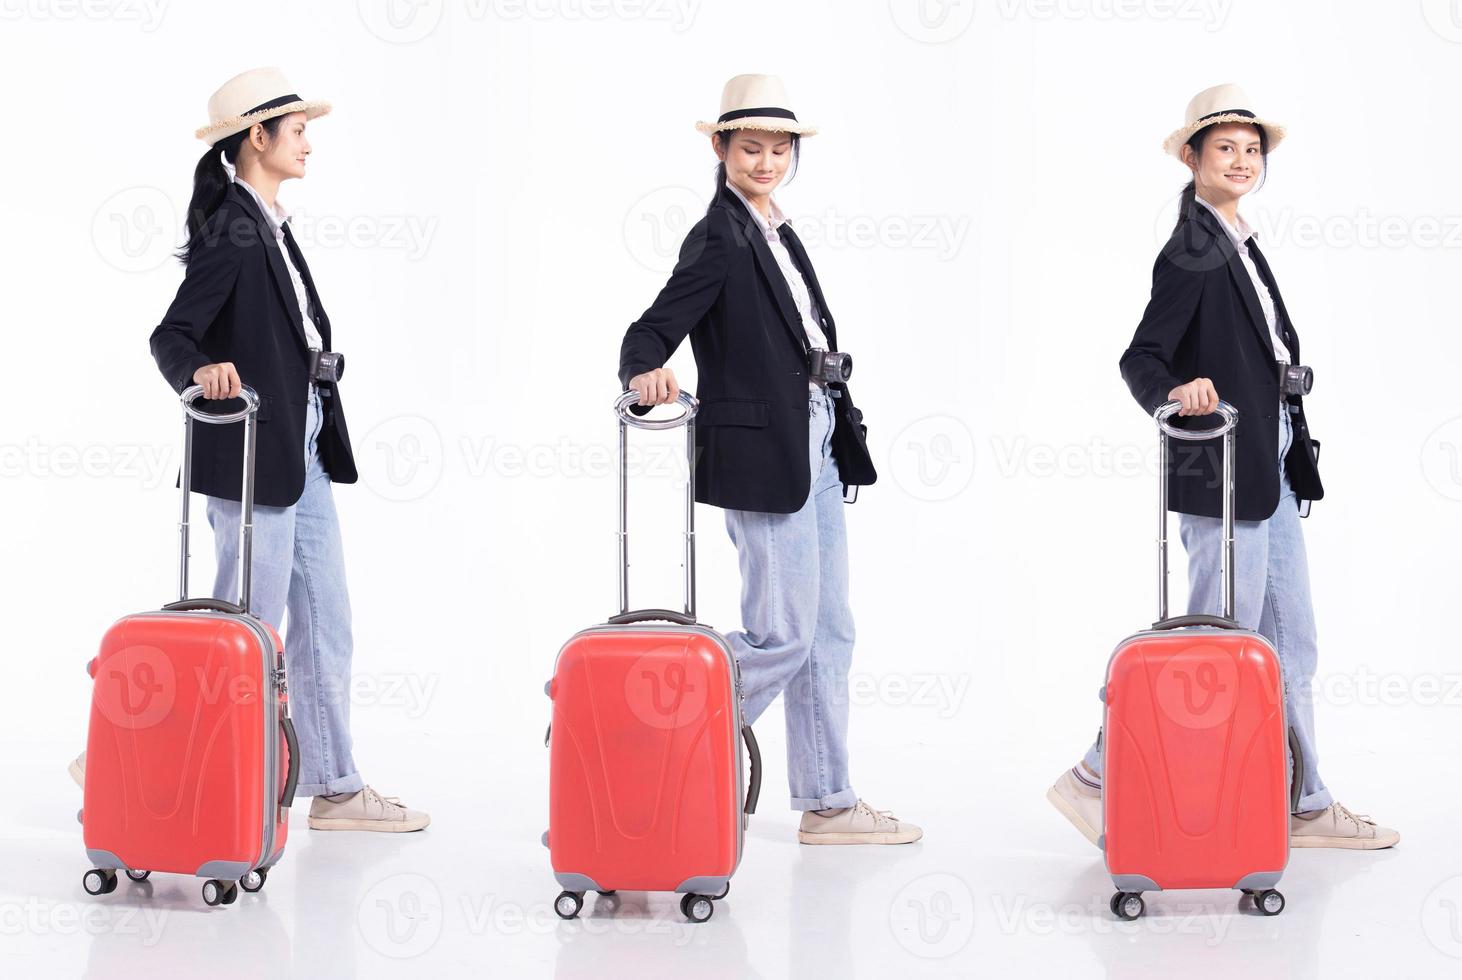 Mujer joven de 20 años de duración, guía de viajero de raza mixta, mapa turístico con equipaje, sombrero de jeans con cámara. mujer turista viaja siente sonrisa feliz sobre fondo blanco aislado foto